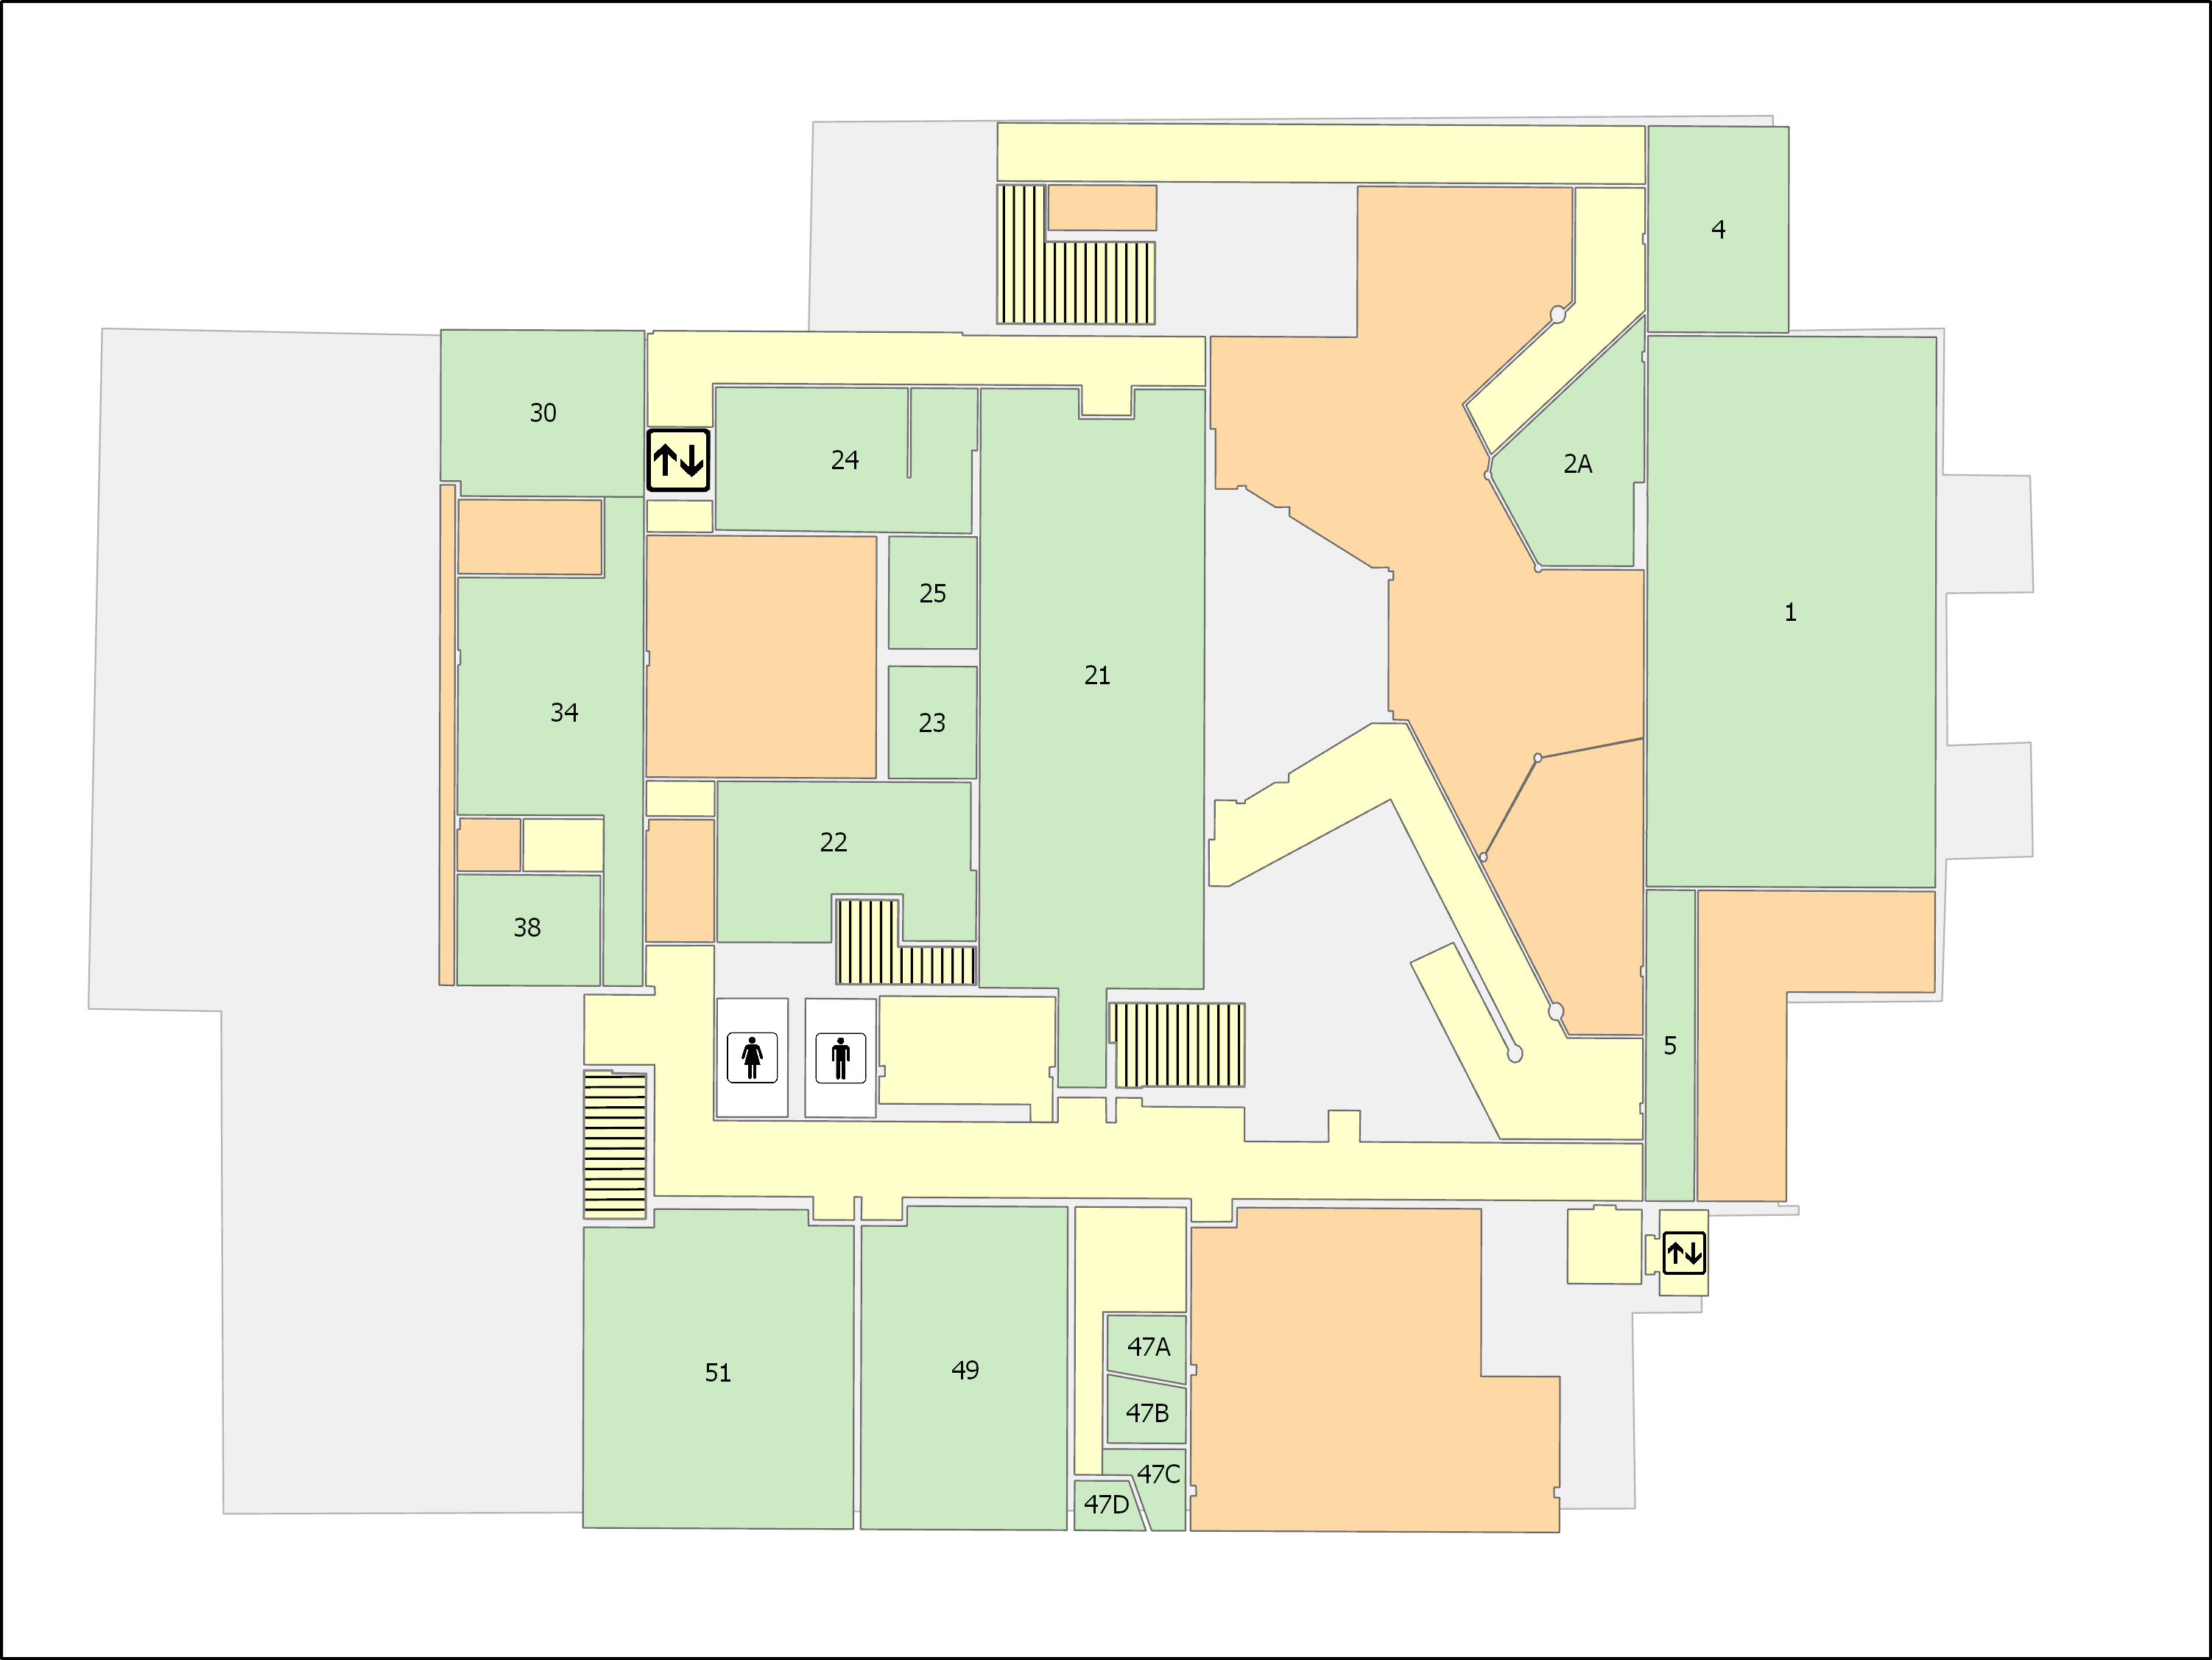 Basement floor floorplan